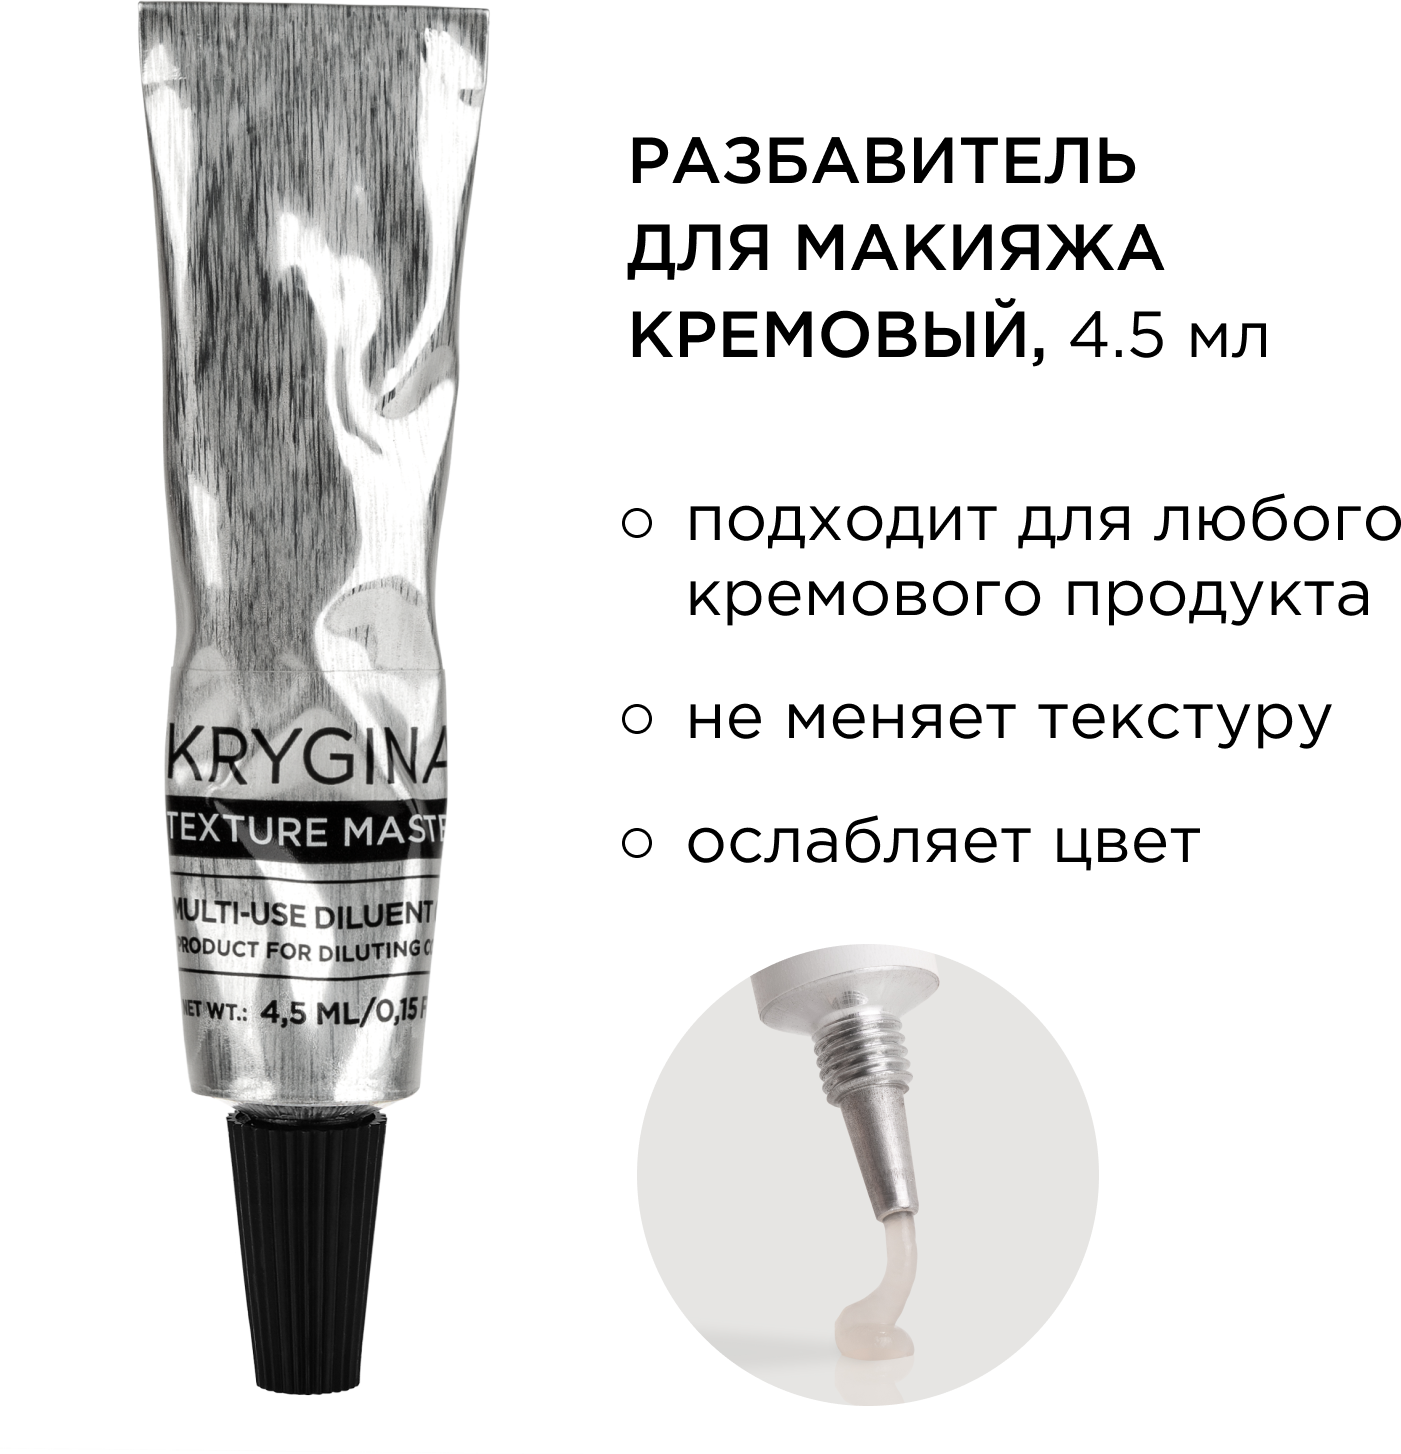 KRYGINA cosmetics Кремовый разбавитель для макияжа и конкритов Texture Master Cream, 4.5 мл